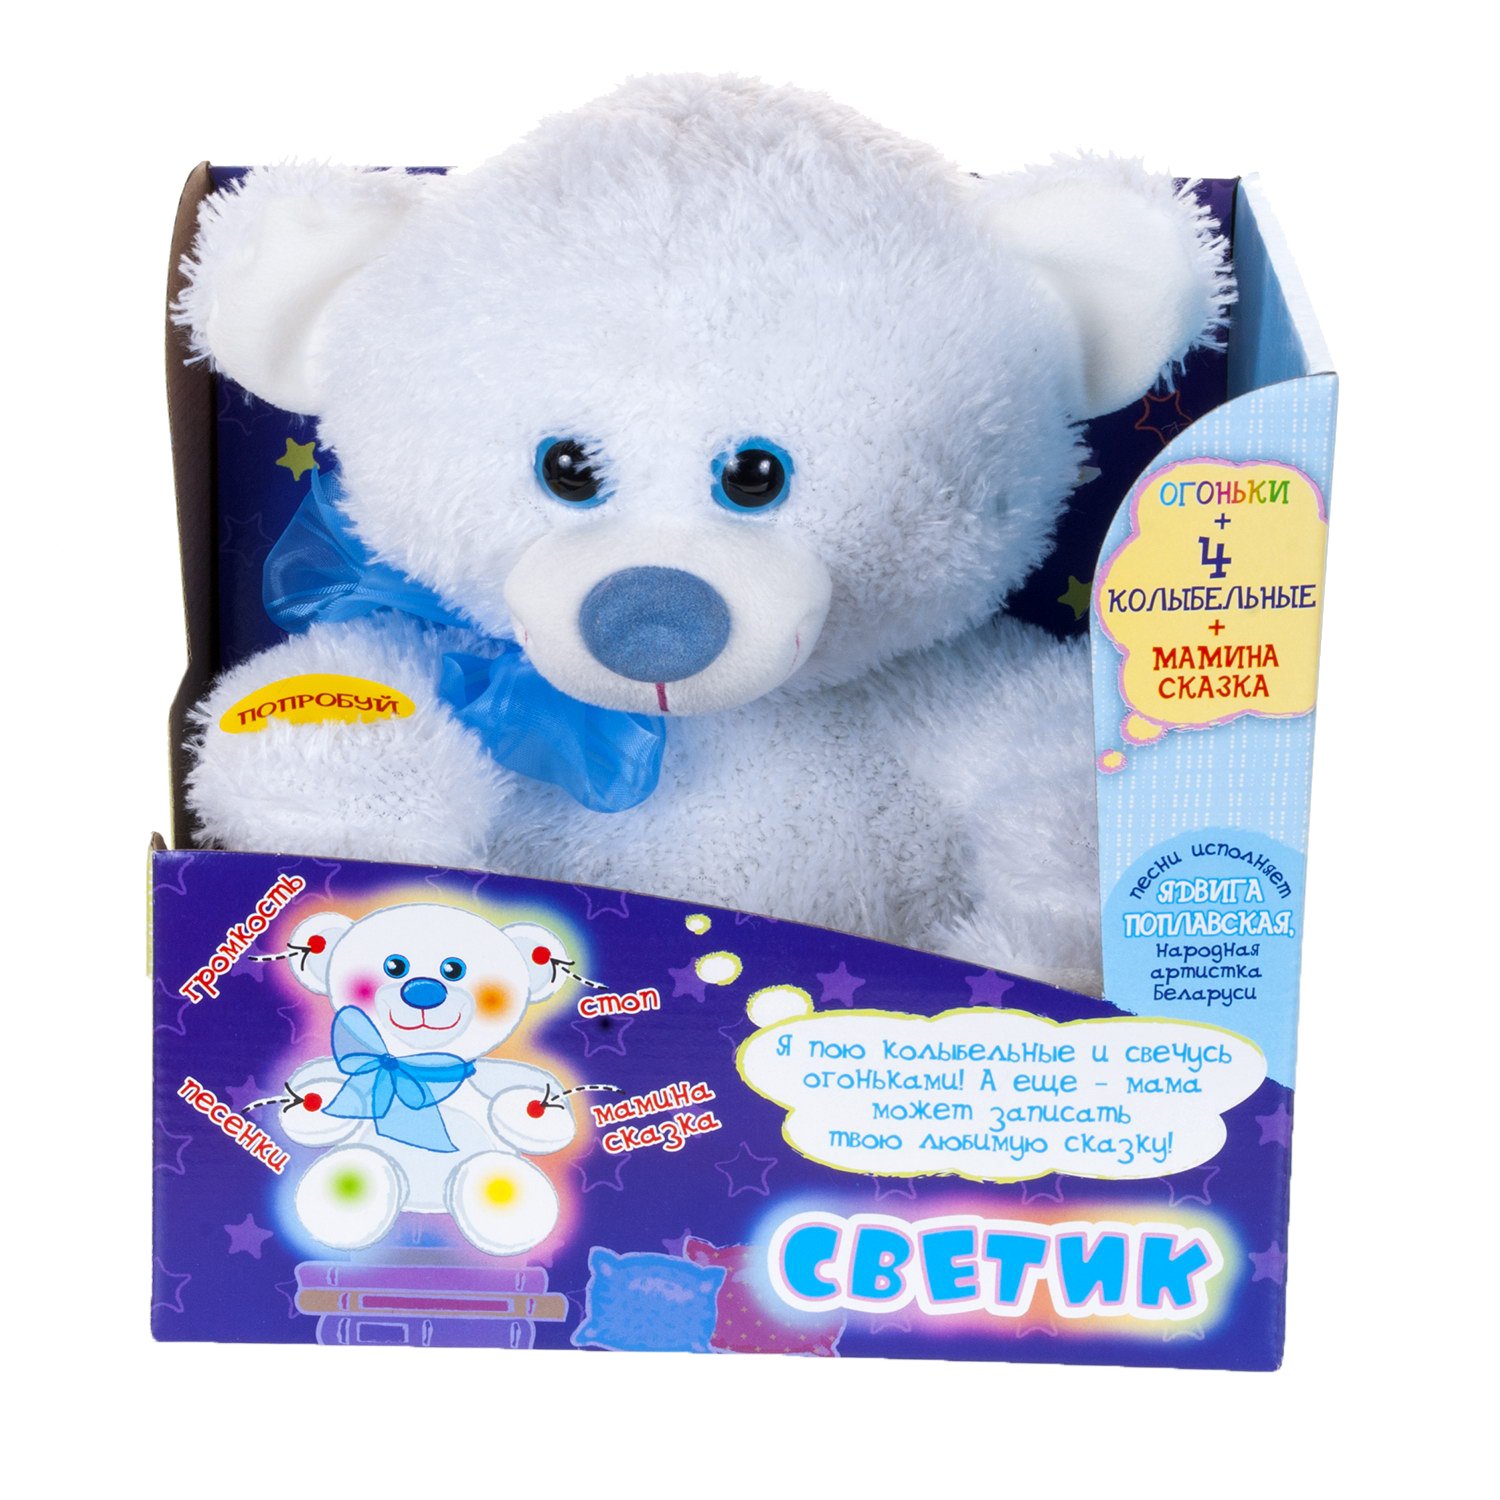 Детские Игрушки Купить В Интернет Магазине Беларуси